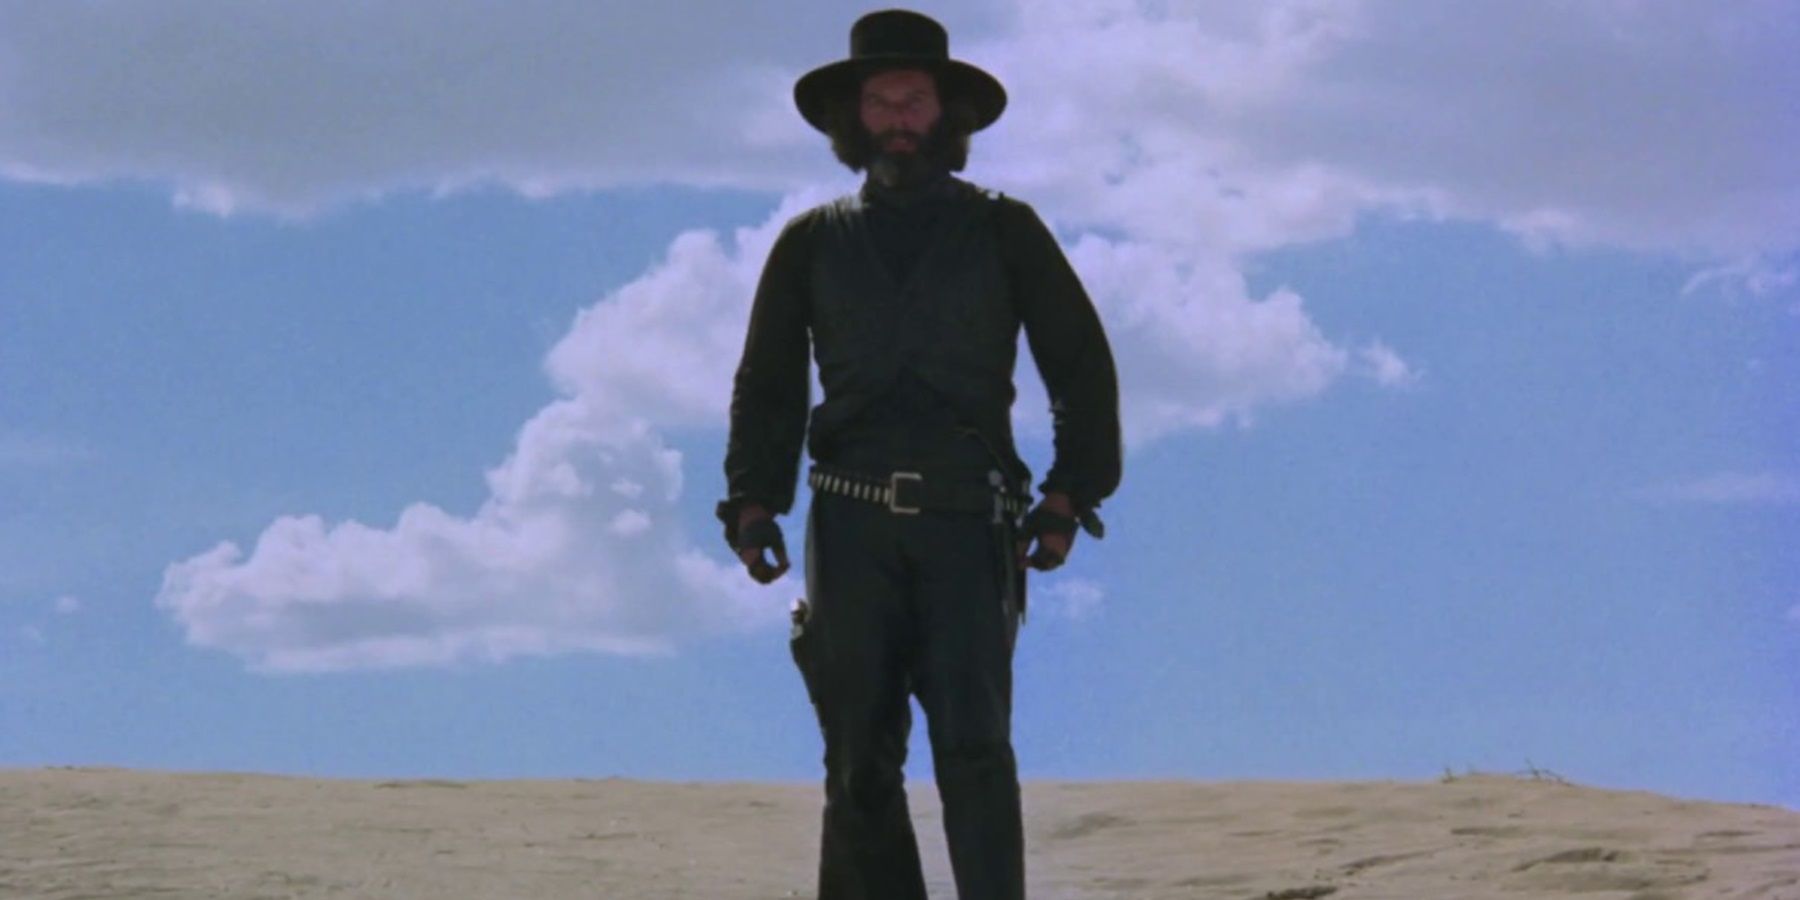 The gunslinger in the desert in El Topo